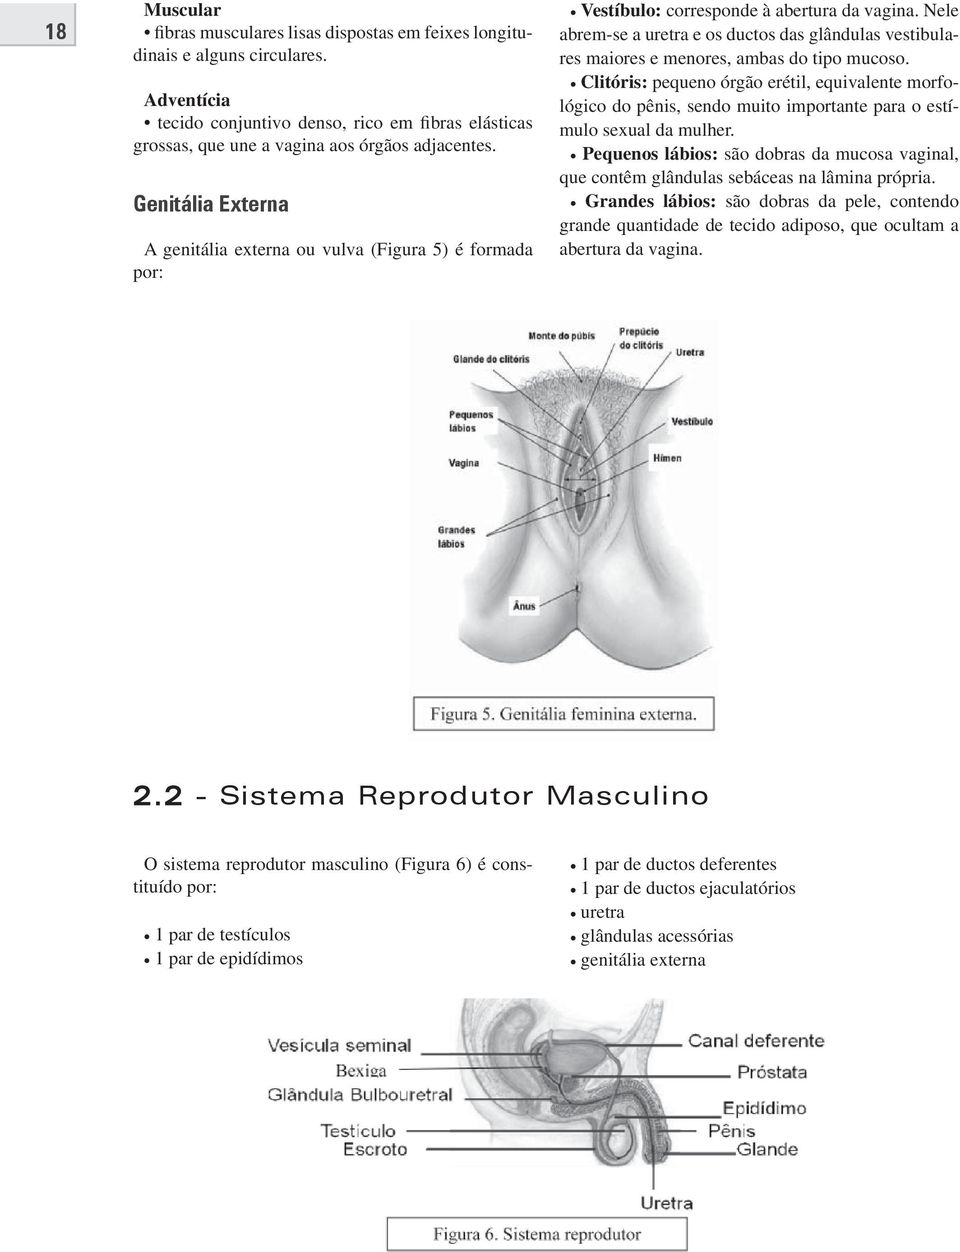 Nele abrem-se a uretra e os ductos das glândulas vestibulares maiores e menores, ambas do tipo mucoso.